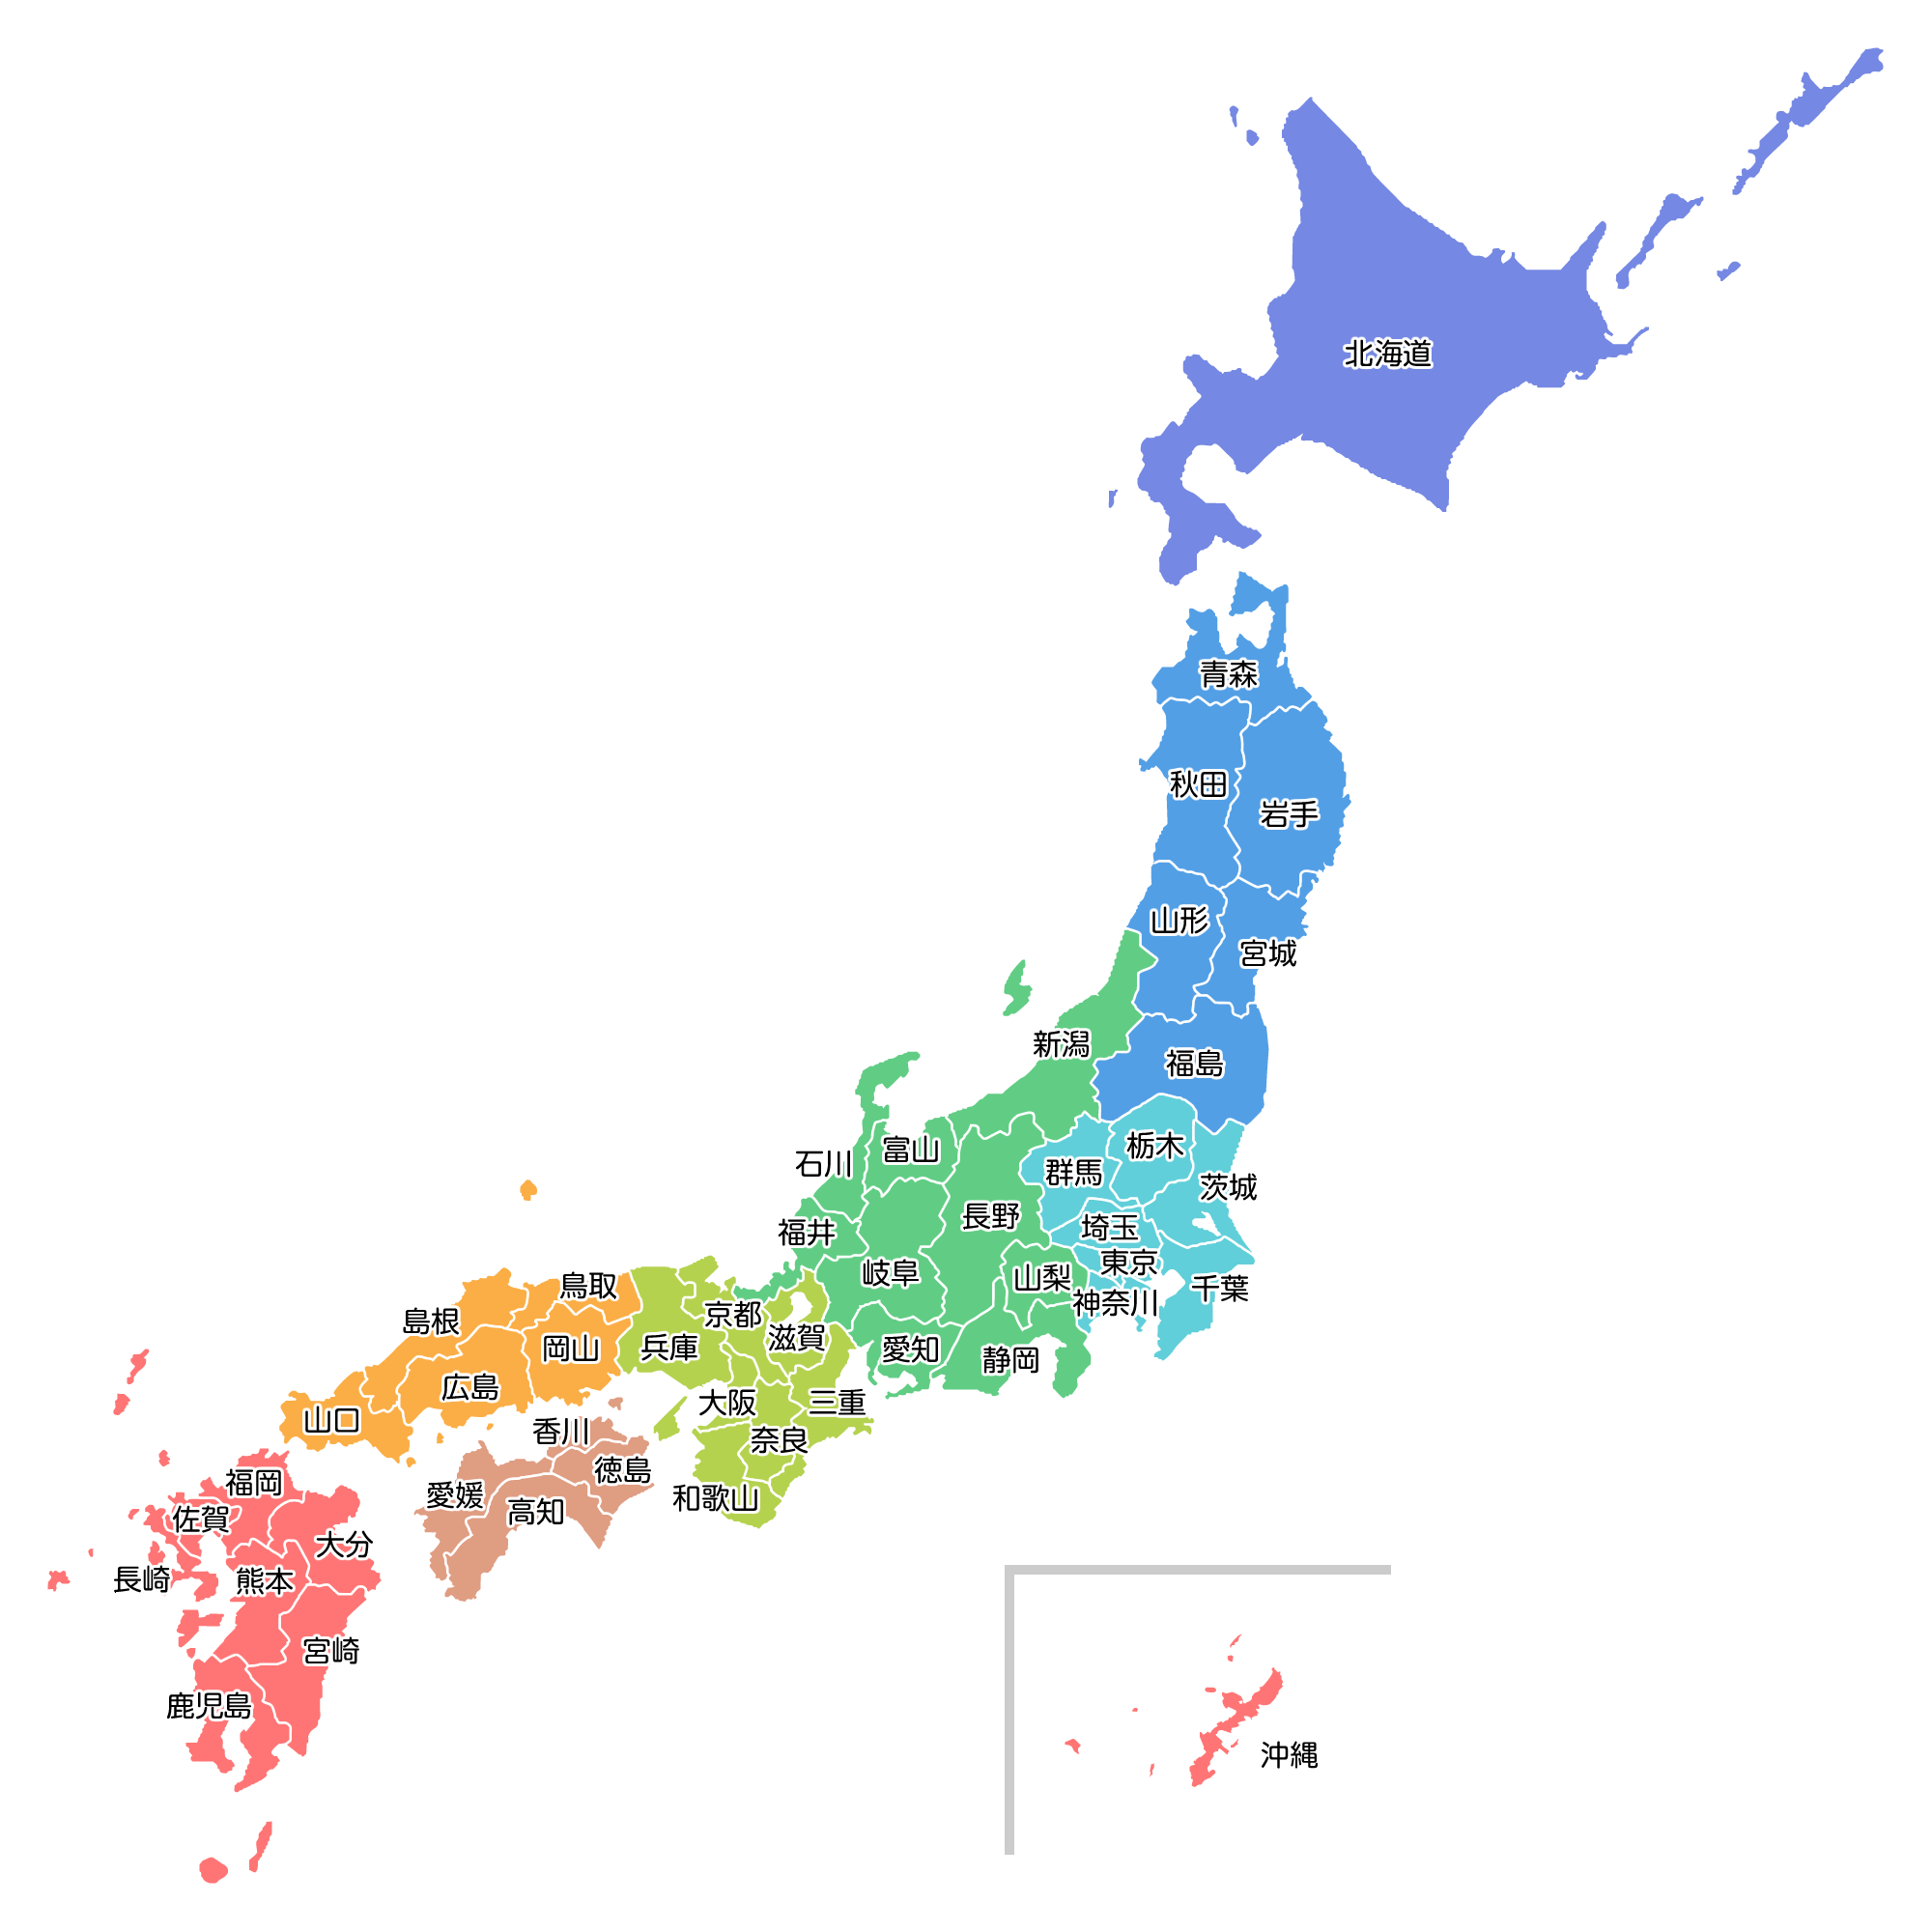 日本 地図 画像 - KibrisPDR